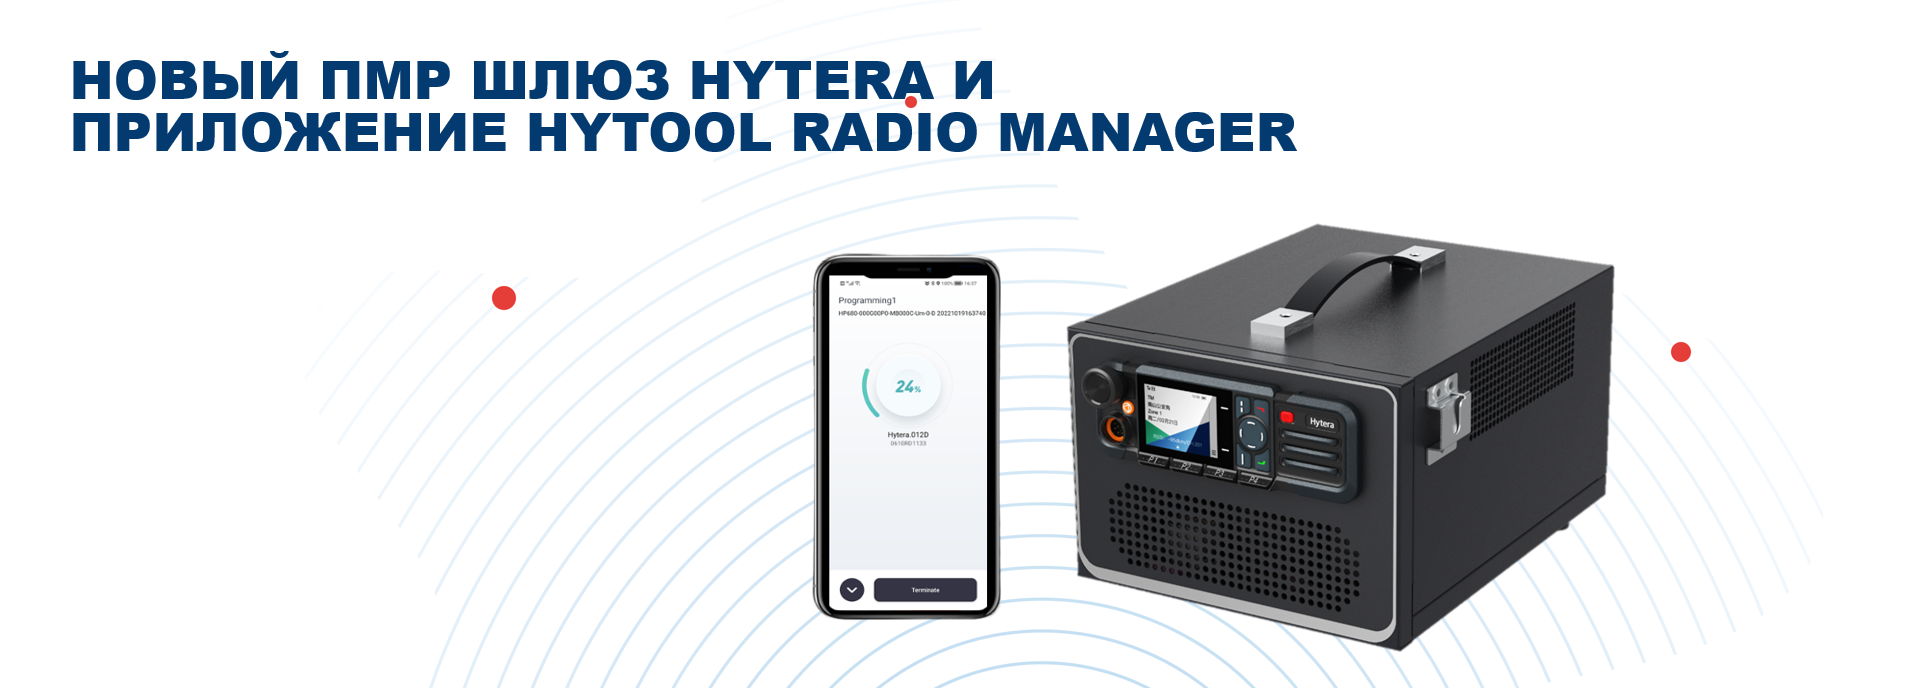 Новый ПМР шлюз Hytera и приложение HyTool Radio Manager